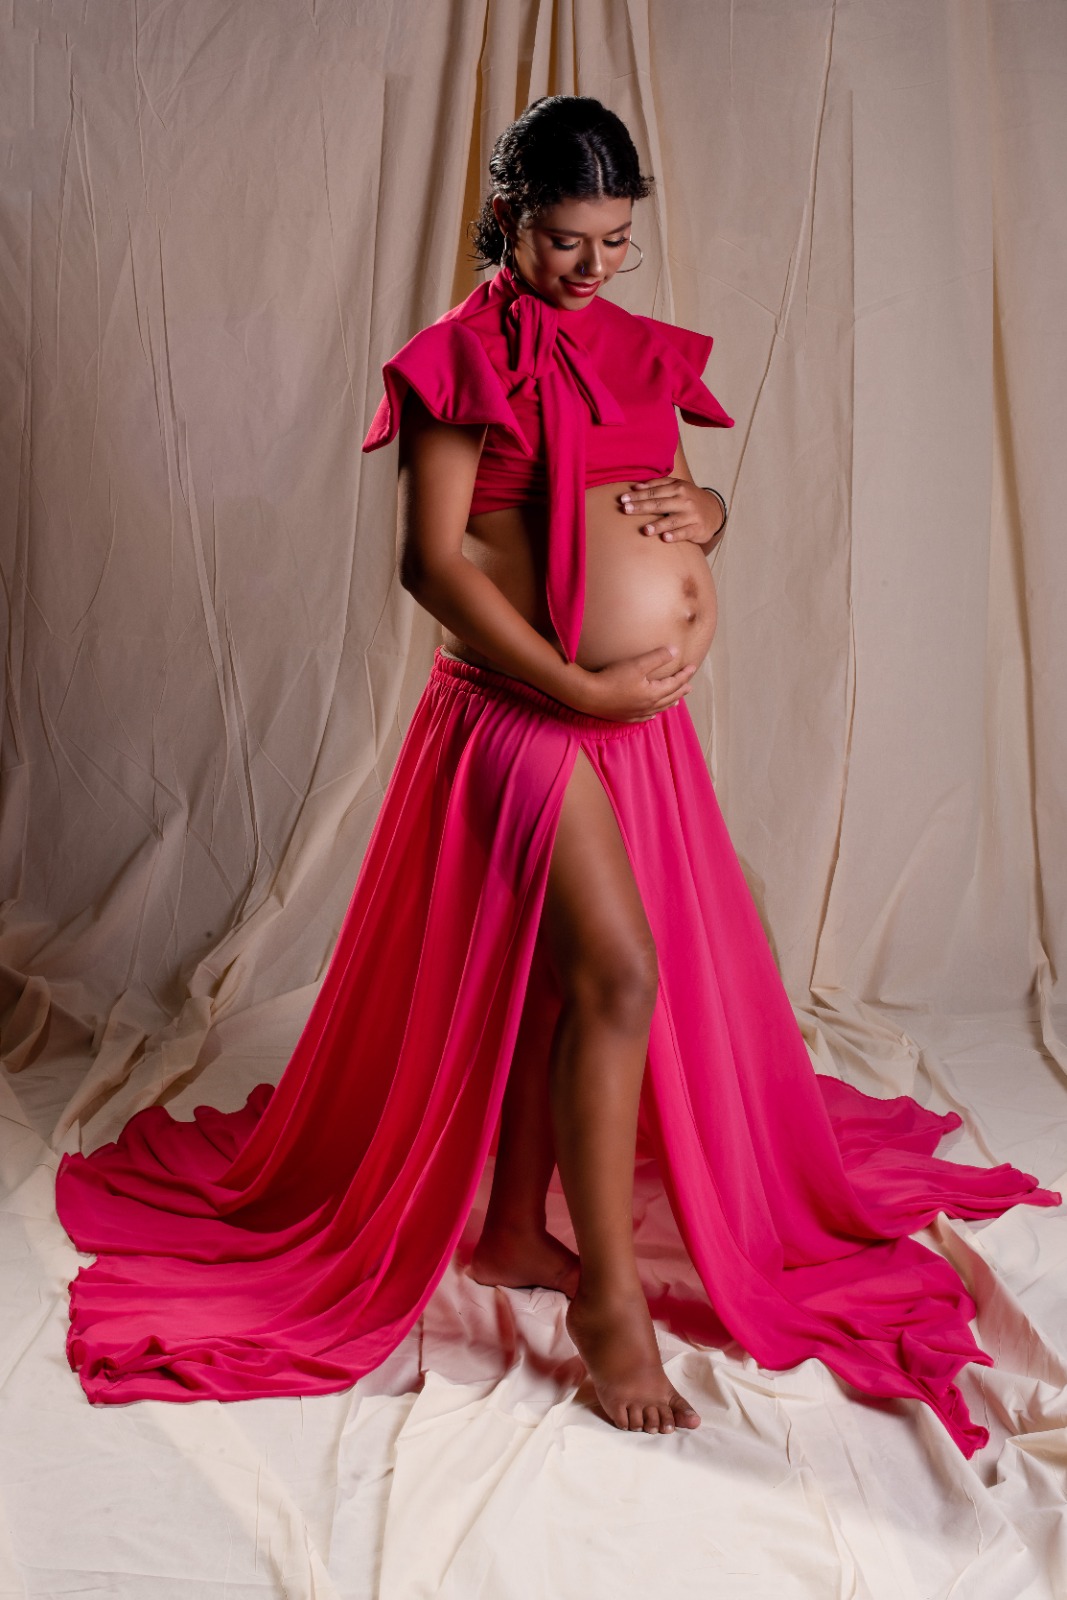 Mulheres grávidas ganham ensaio fotográfico da Prefeitura de Sapé